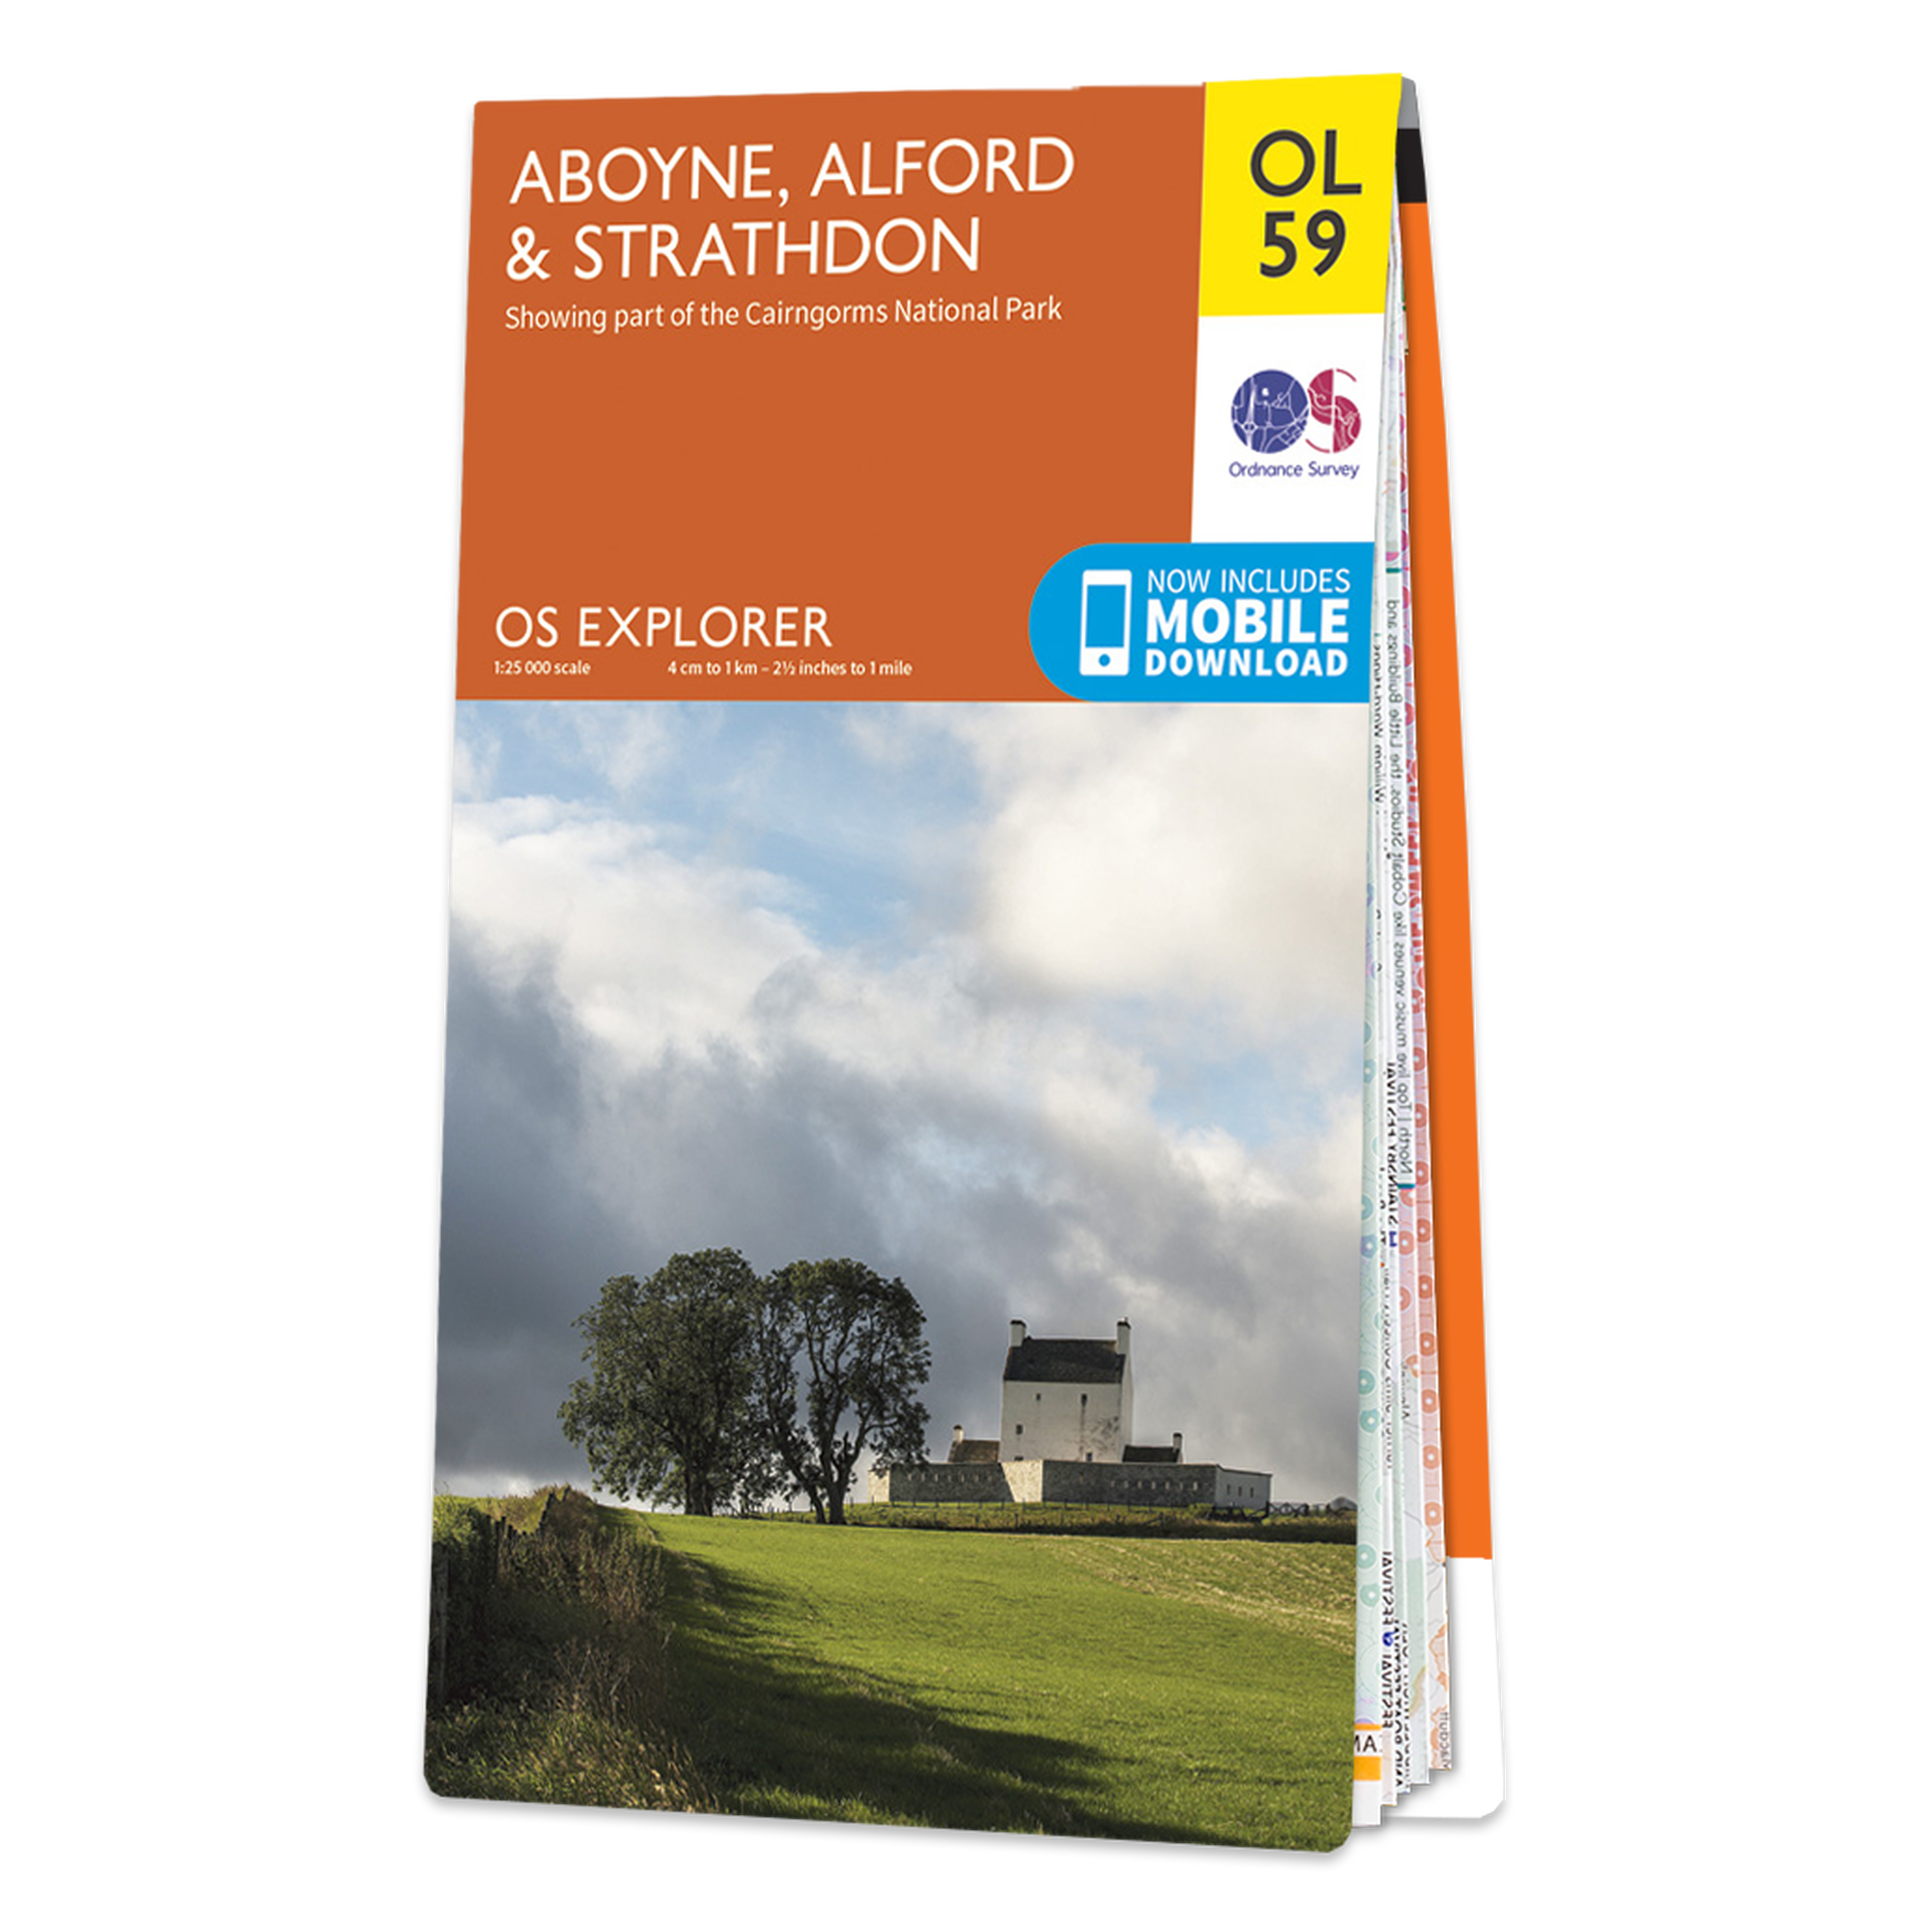 Ordnance Survey OL 59 Aboyne, Alford & Strathdon Explorer 1:25k